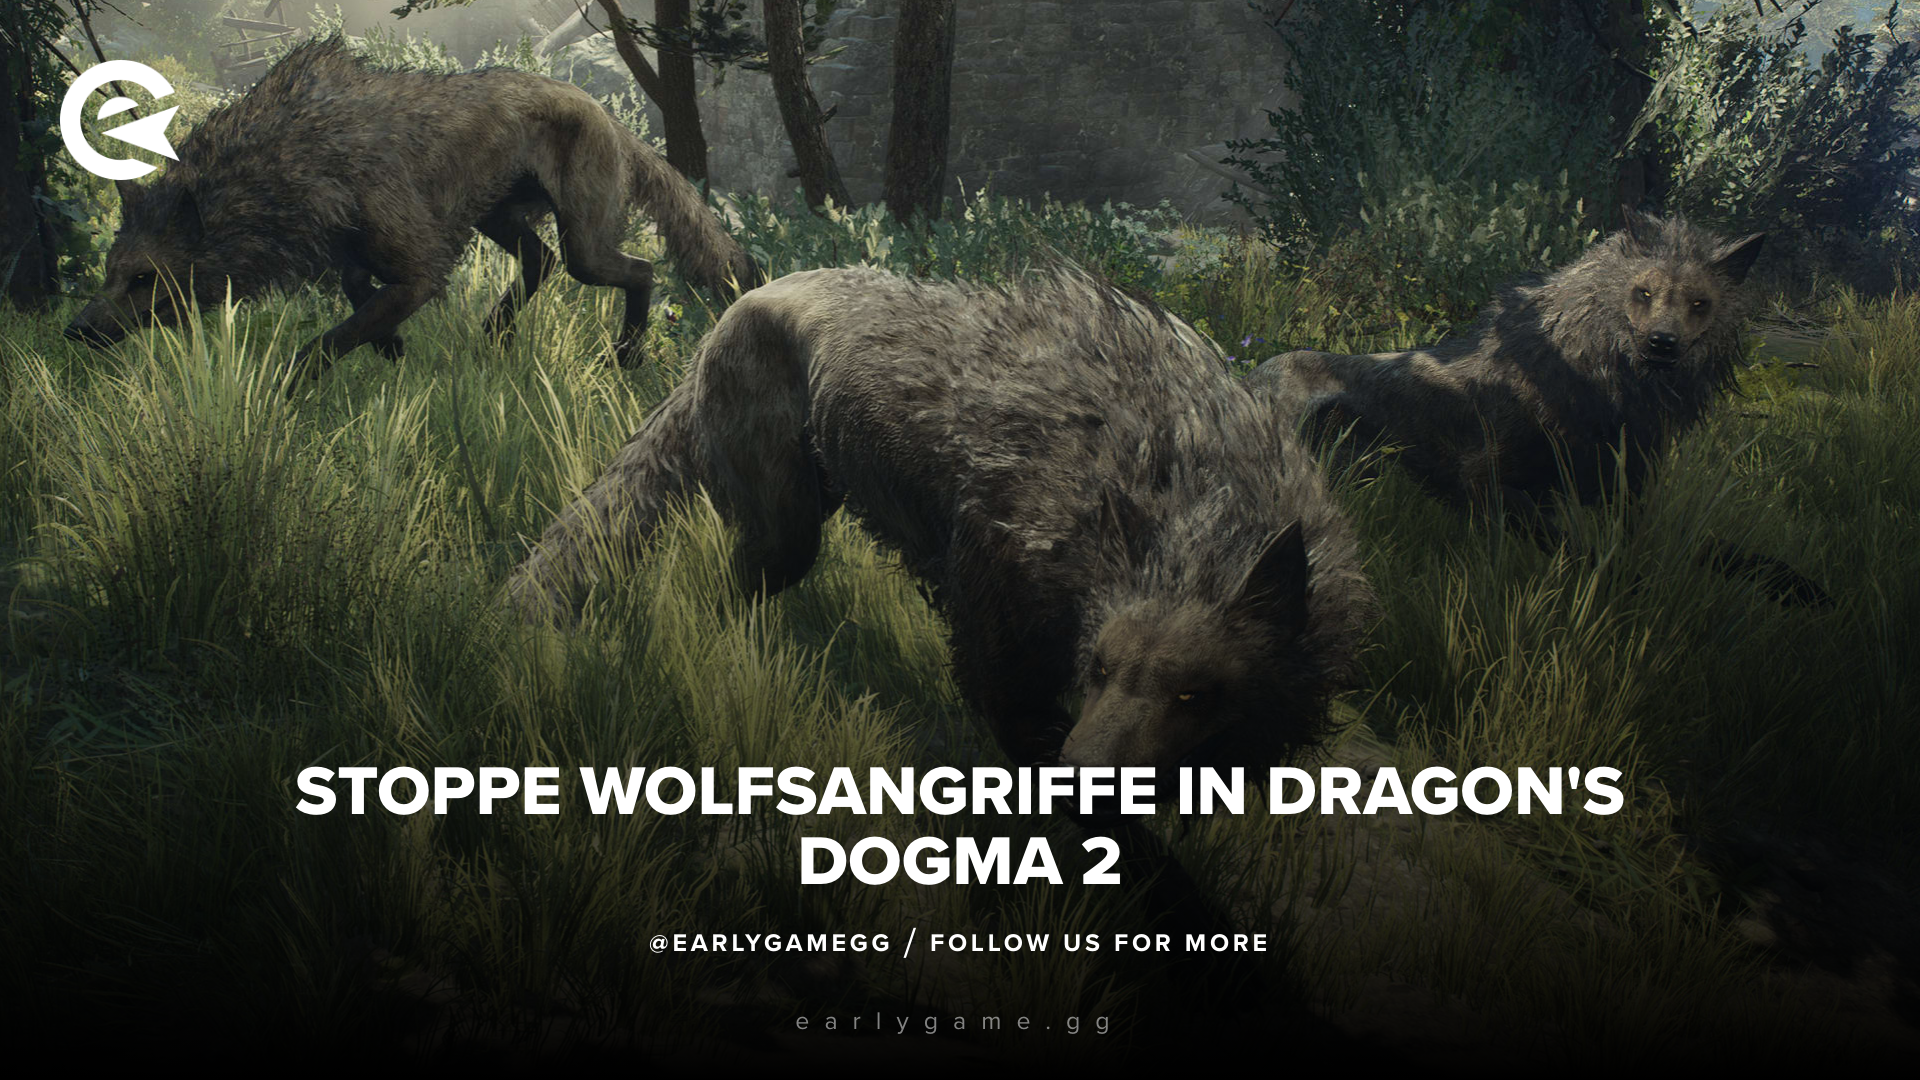 spieler entdeckt raffinierte taktik, um wolfsangriffe in dragon's dogma 2 zu stoppen